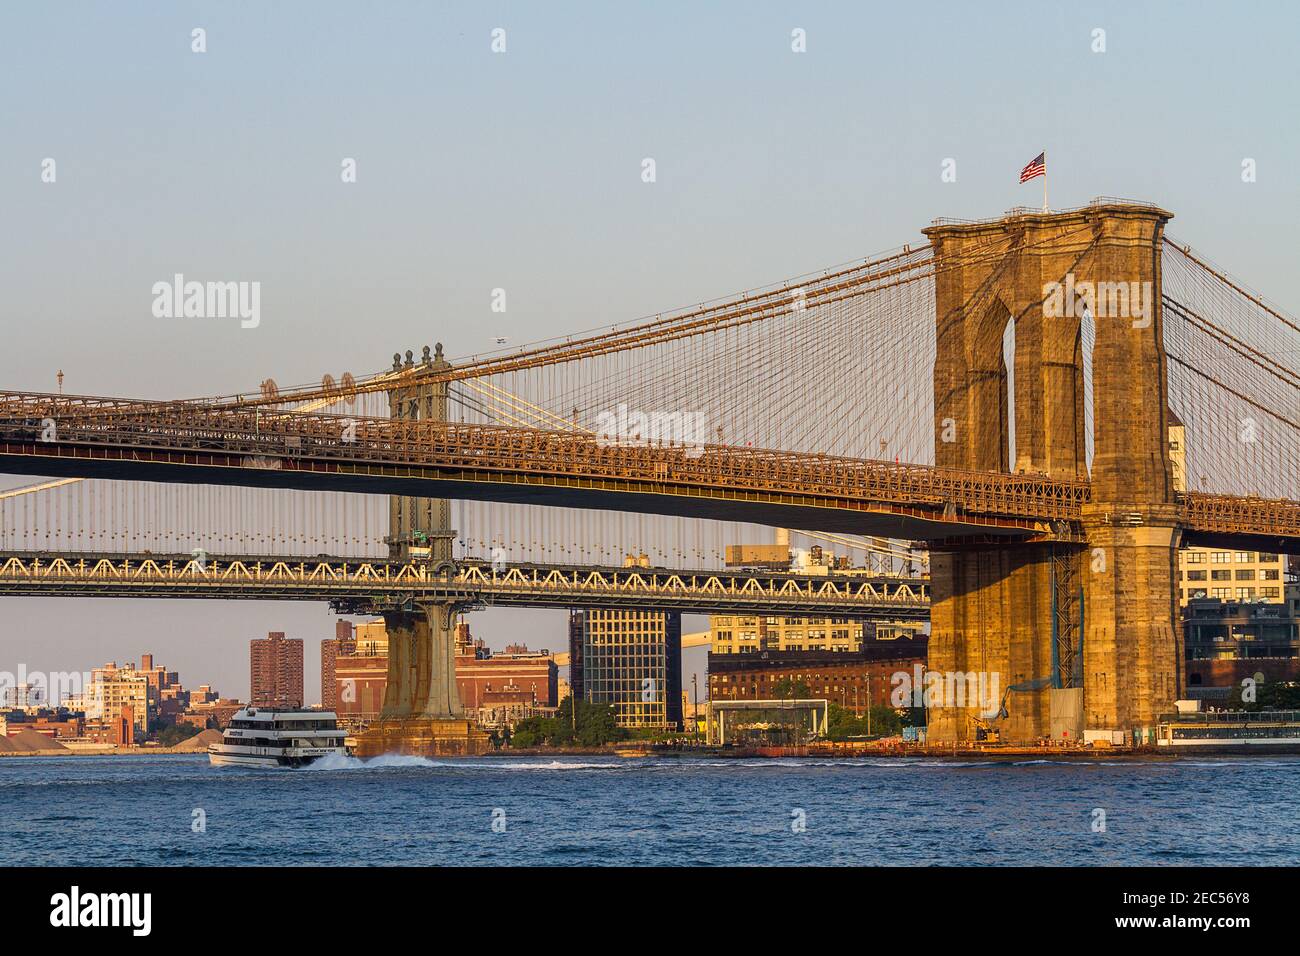 Brooklyn und Manhattan Bridge mit einer Fähre, die unter der vorbeifährt Brücke am Nachmittag Stockfoto